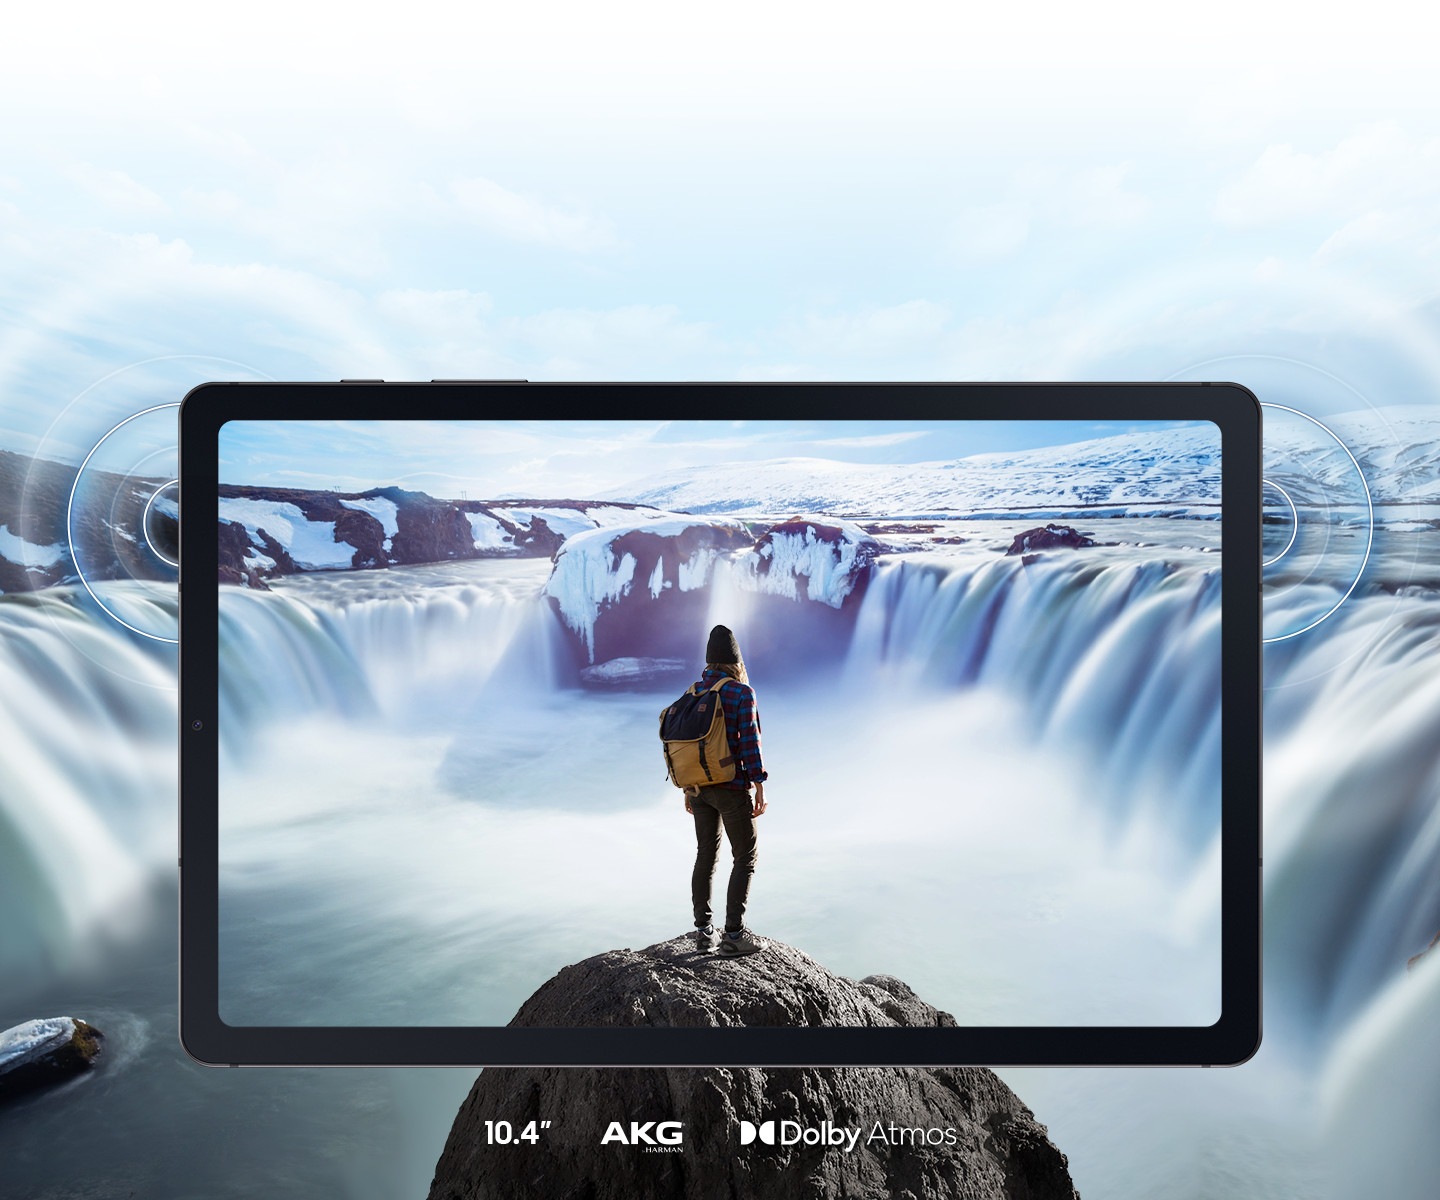 Một hình ảnh của một người đi du lịch đứng trên một mỏm đá và khung cảnh một thác nước hùng vĩ được hiển thị trên màn hình Galaxy Tab S6 Lite nằm ngang. Hình ảnh tràn ra khỏi màn hình để thể hiện trải nghiệm đắm chìm từ thiết bị với viền màn hình mỏng và hệ thống loa kép. Logo AKG và Dolby Atmos được hiển thị. 